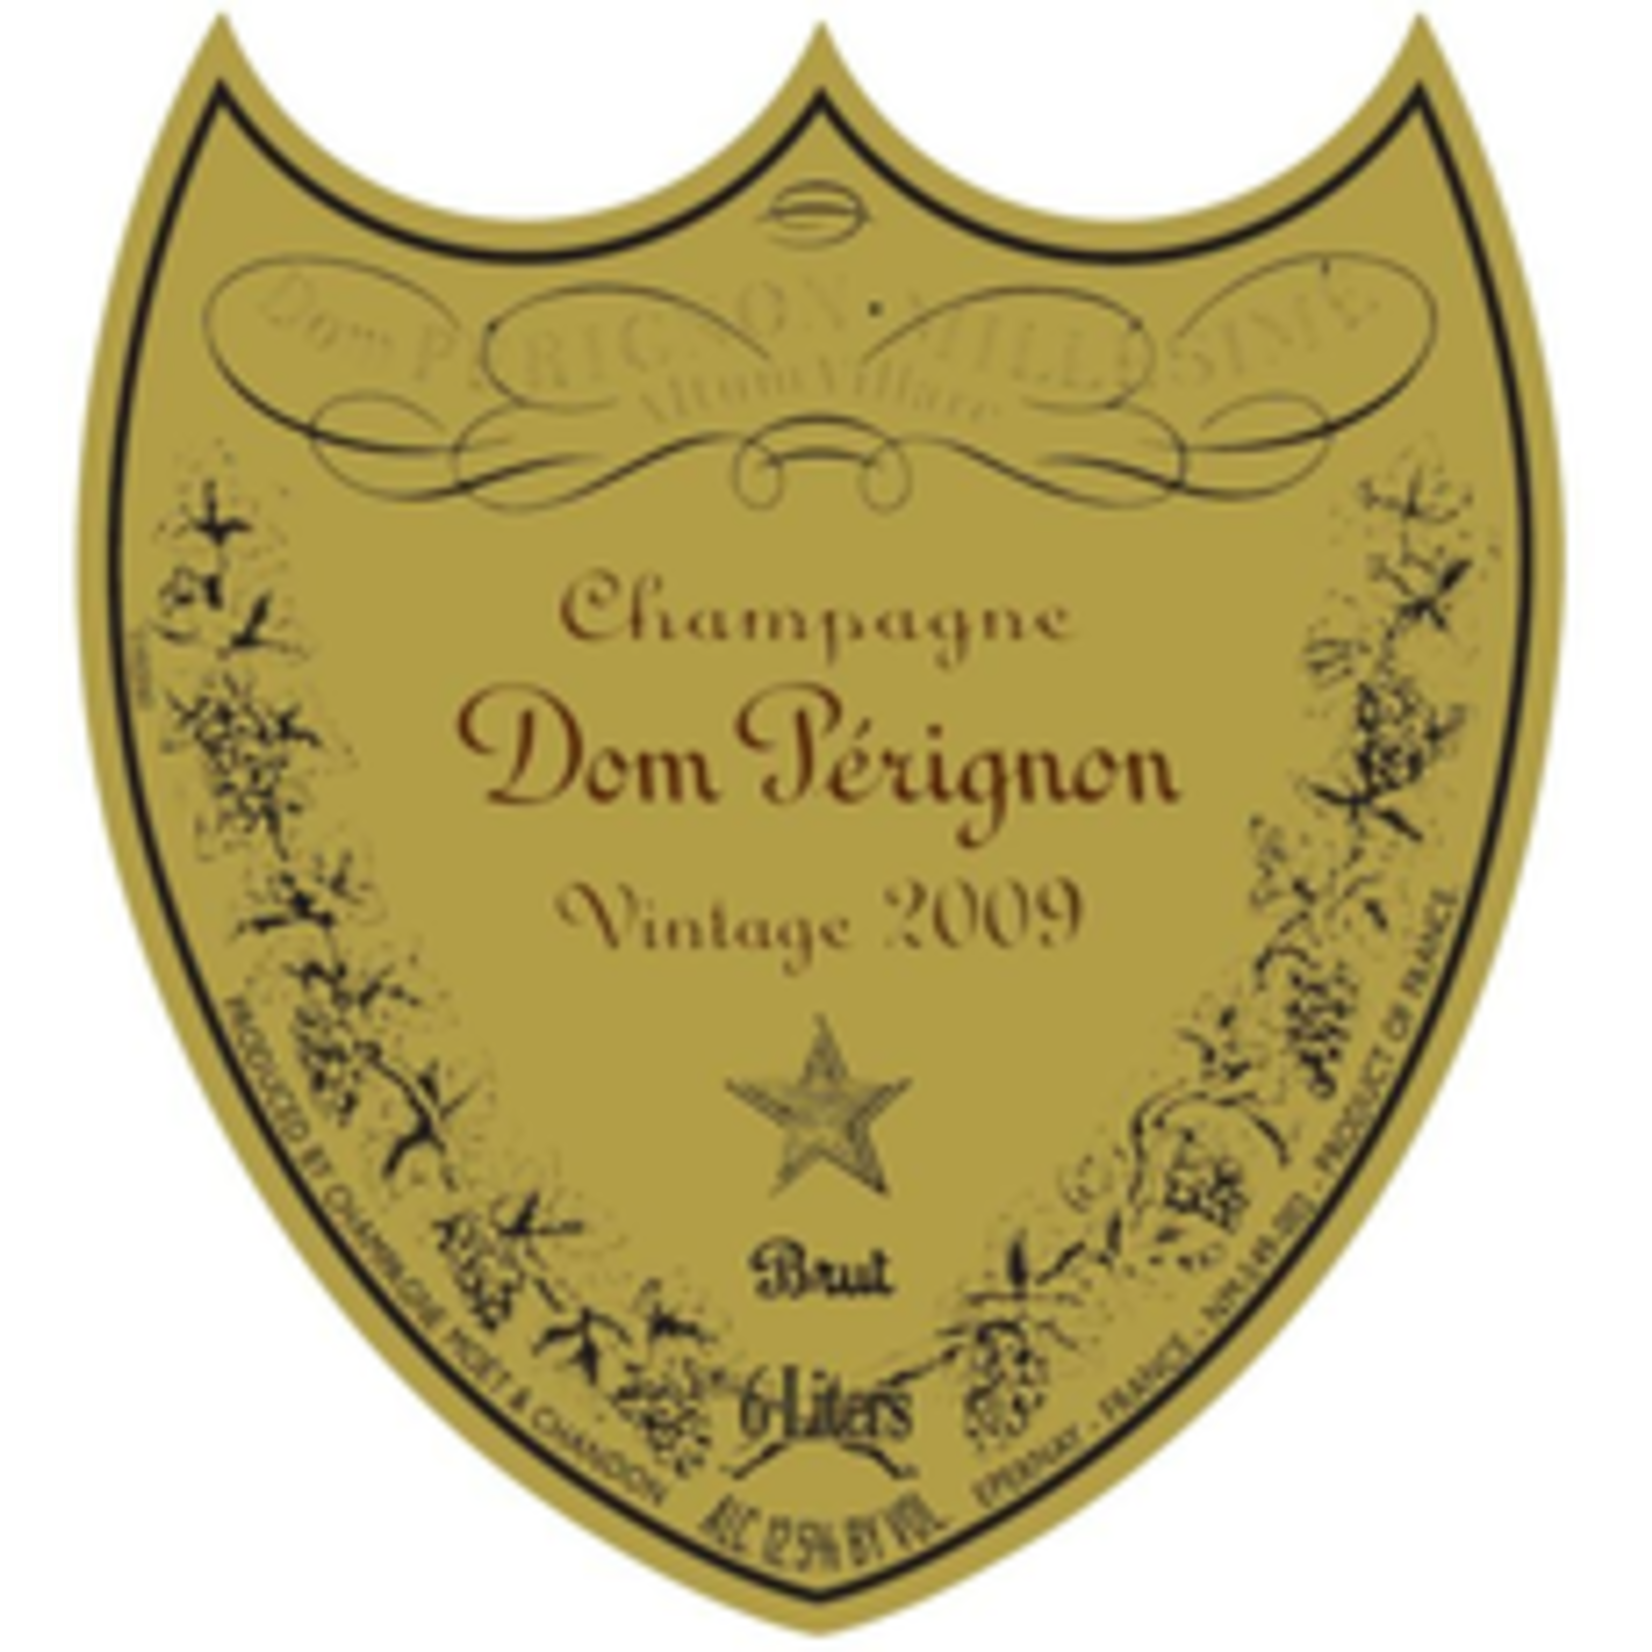 Sparkling Dom Perignon Champagne 2012 Gift Box